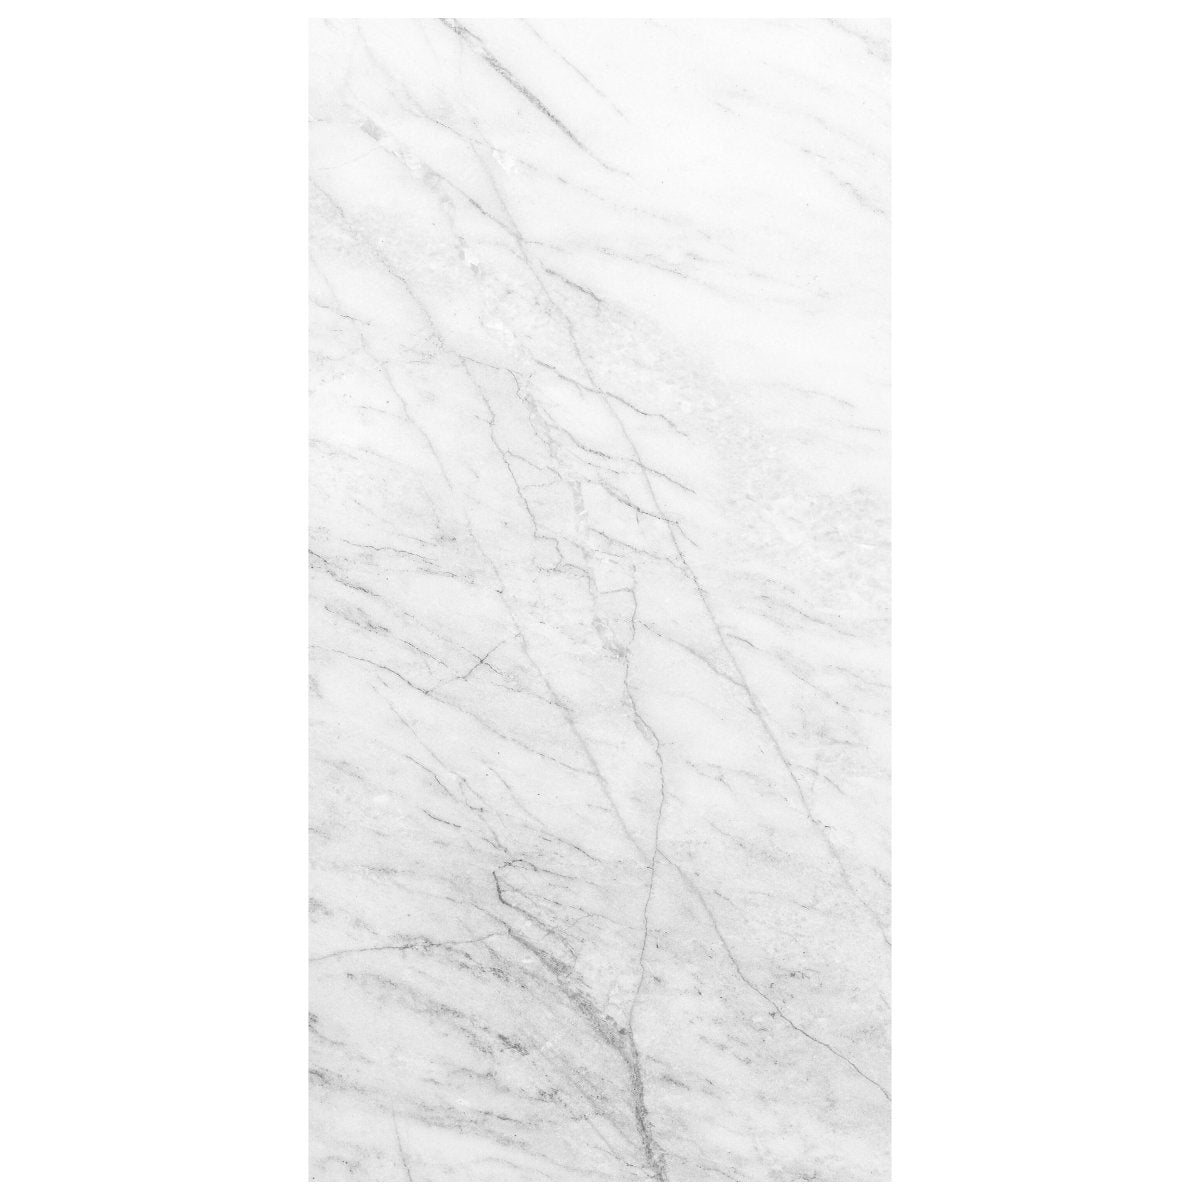 Türtapete weißer Marmor, Naturstein, Stein, Muster M1220 - Bild 2